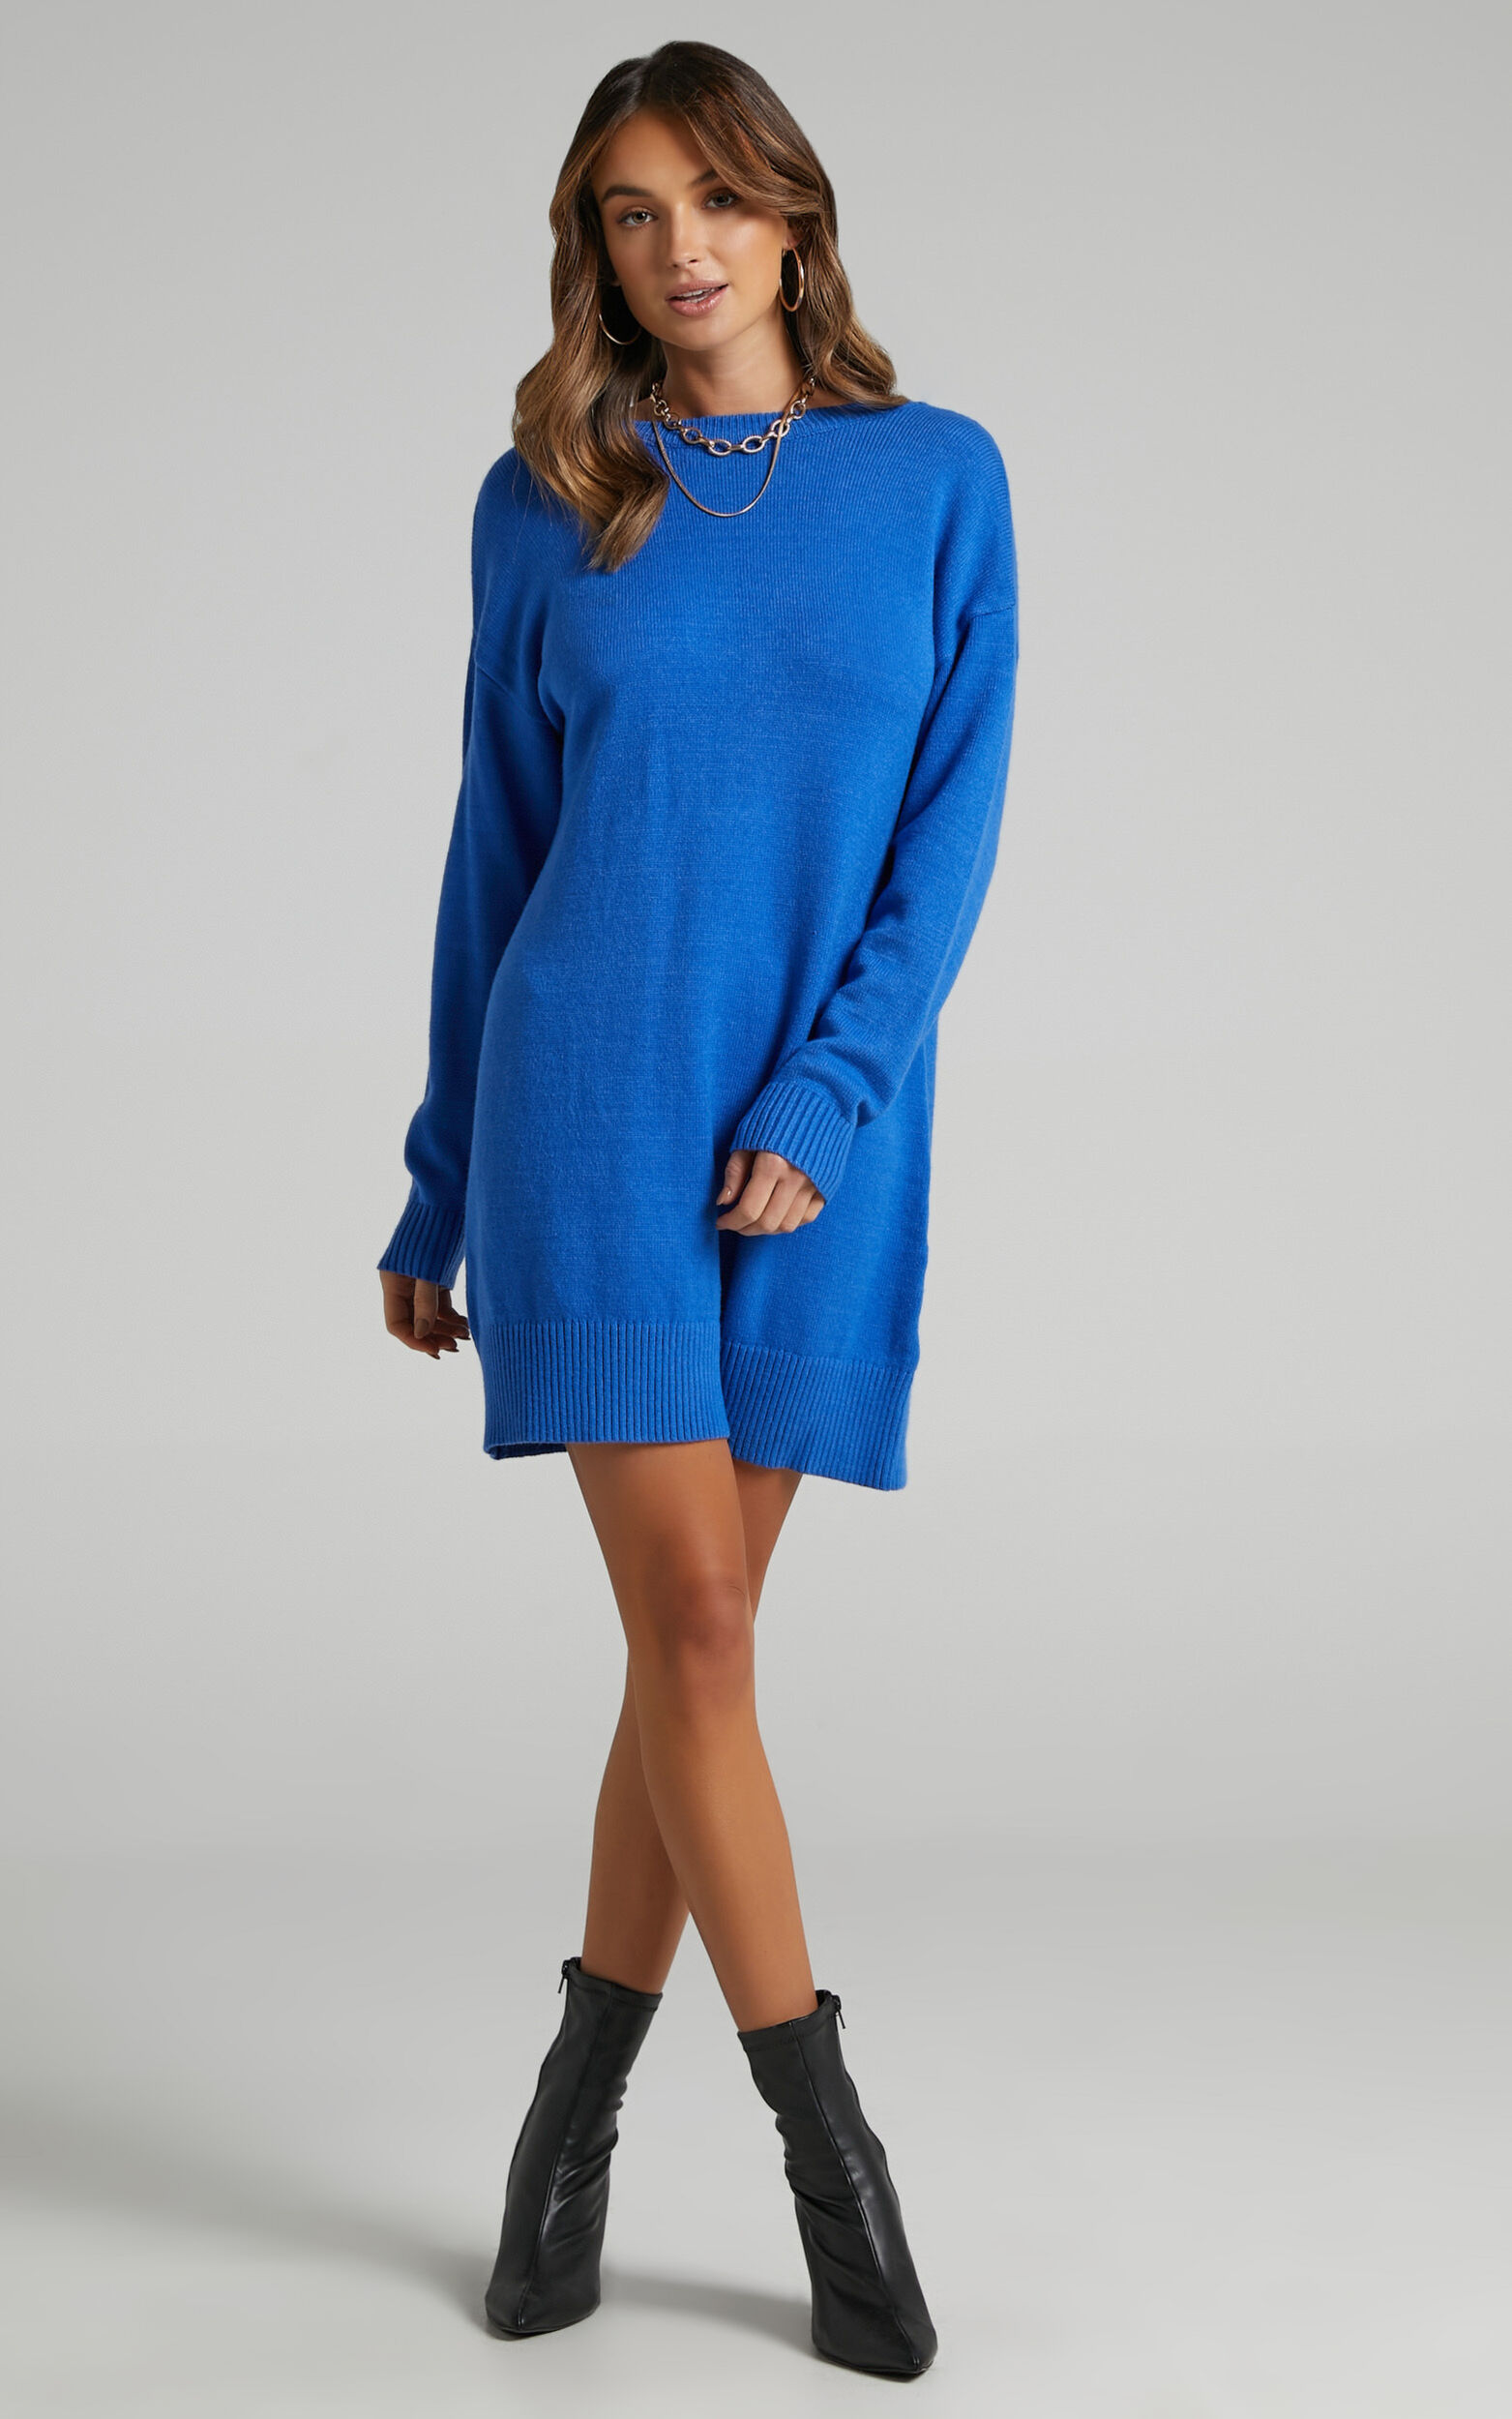 Shanisse Mini Dress - Open Back Knit Dress in Cobalt | Showpo USA